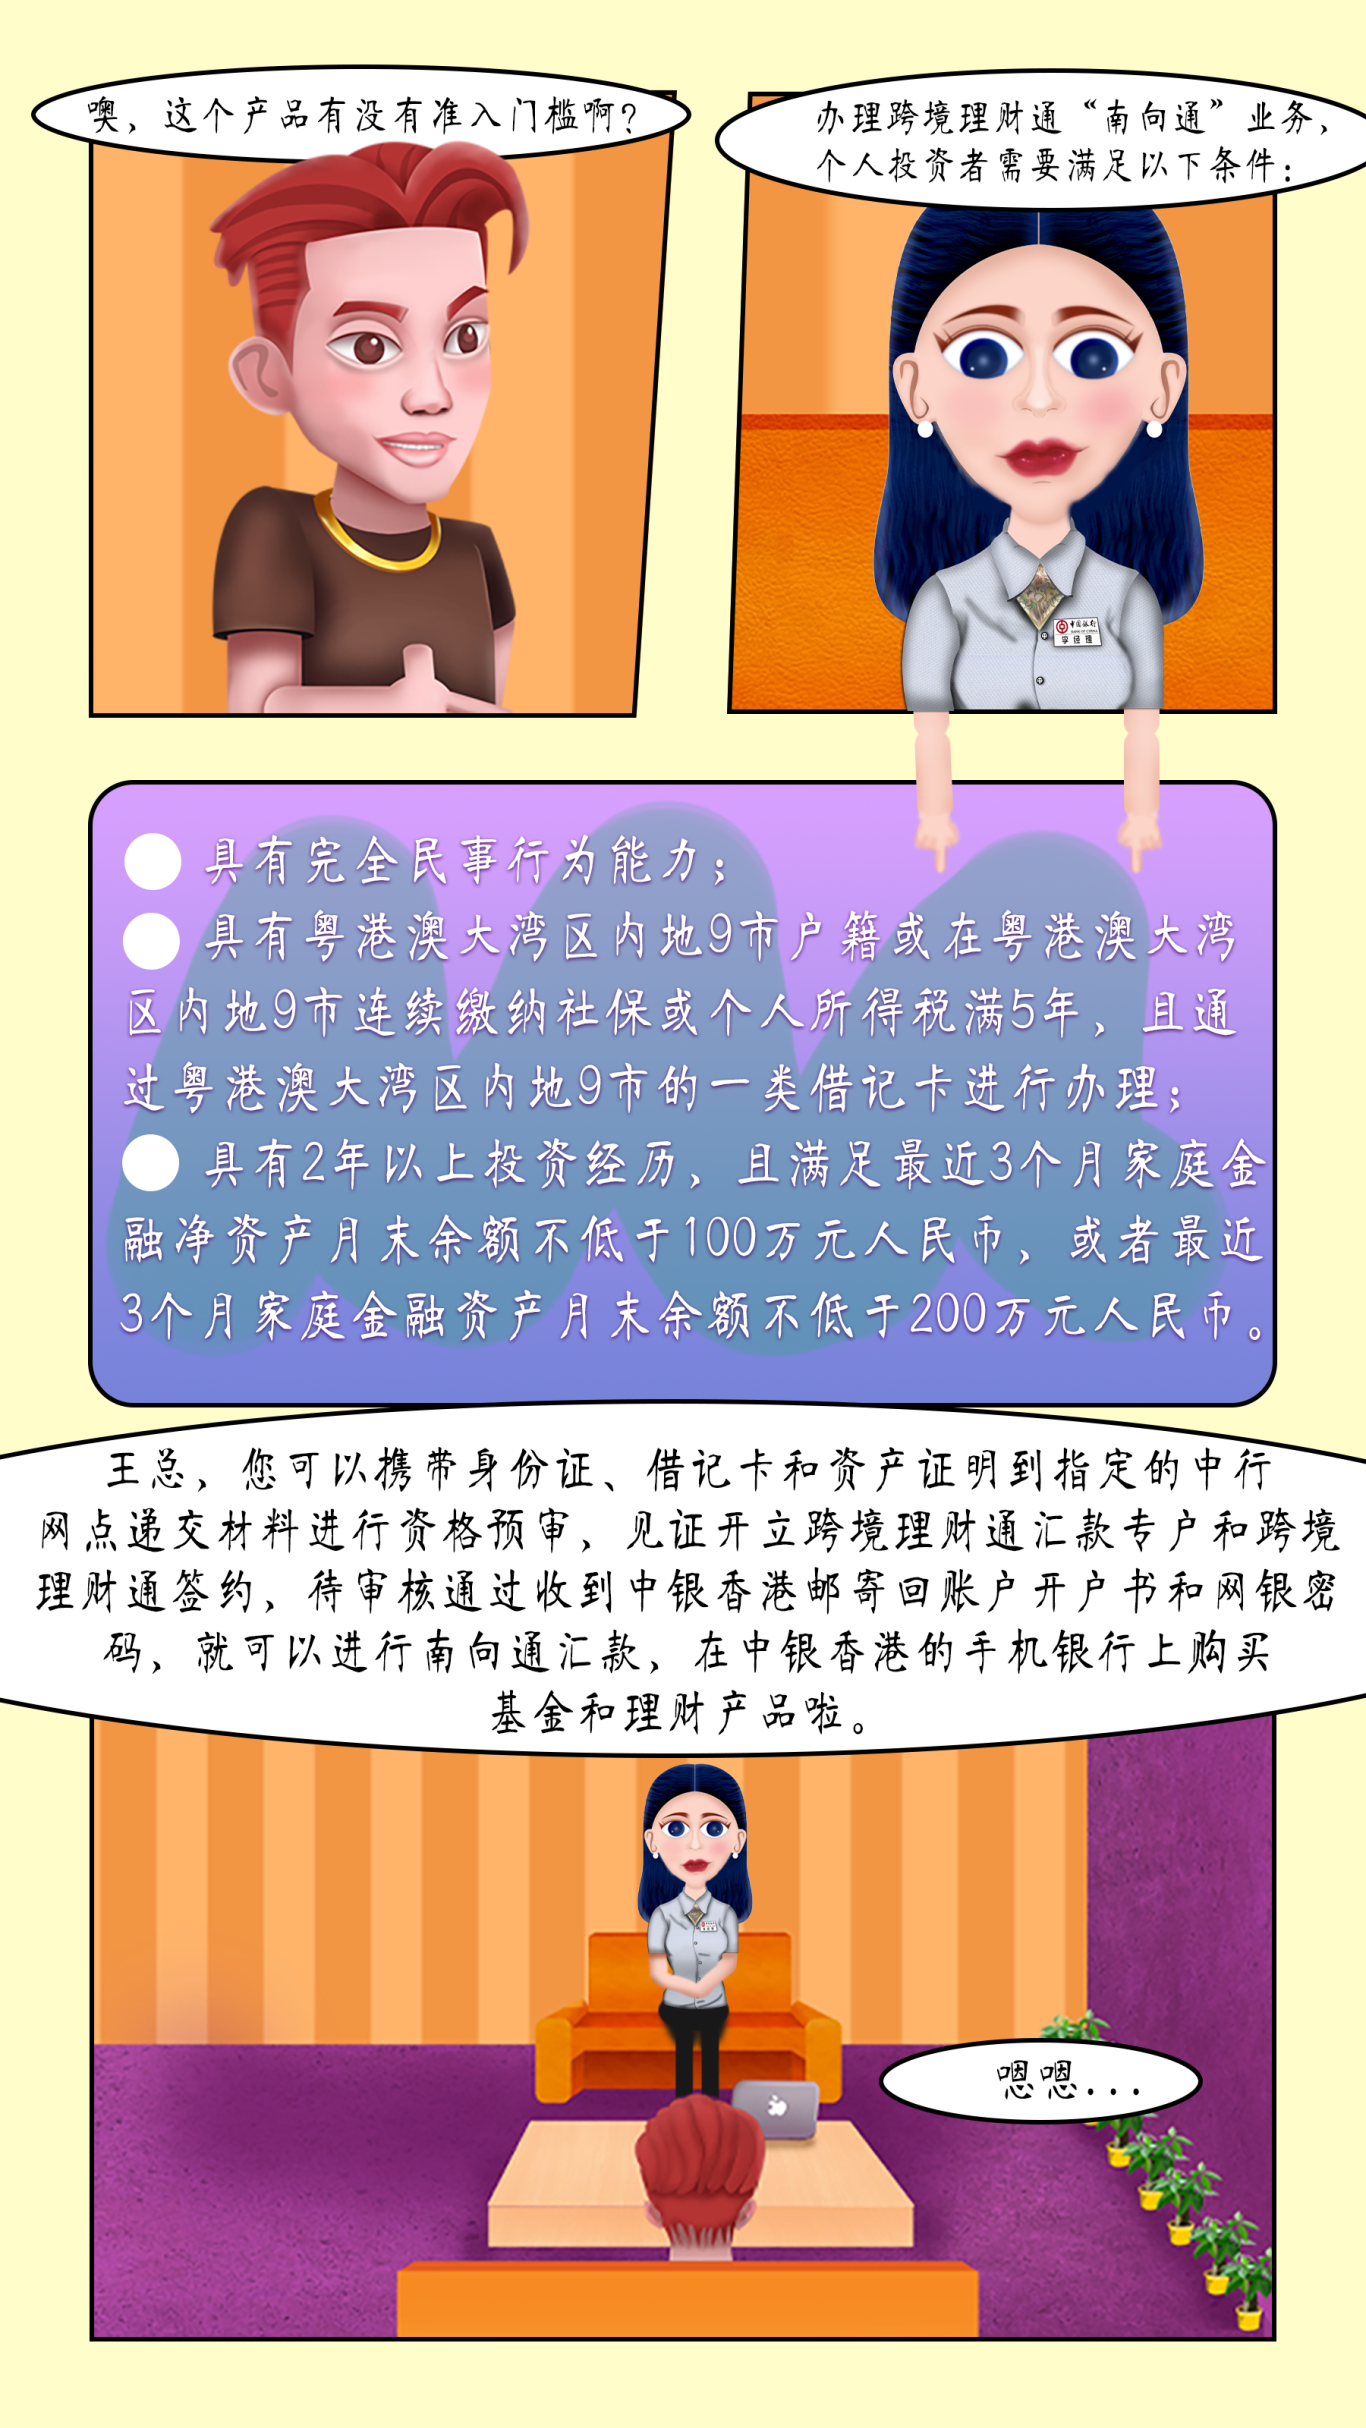 中国银行天河支行银行卡中心漫画制作图2